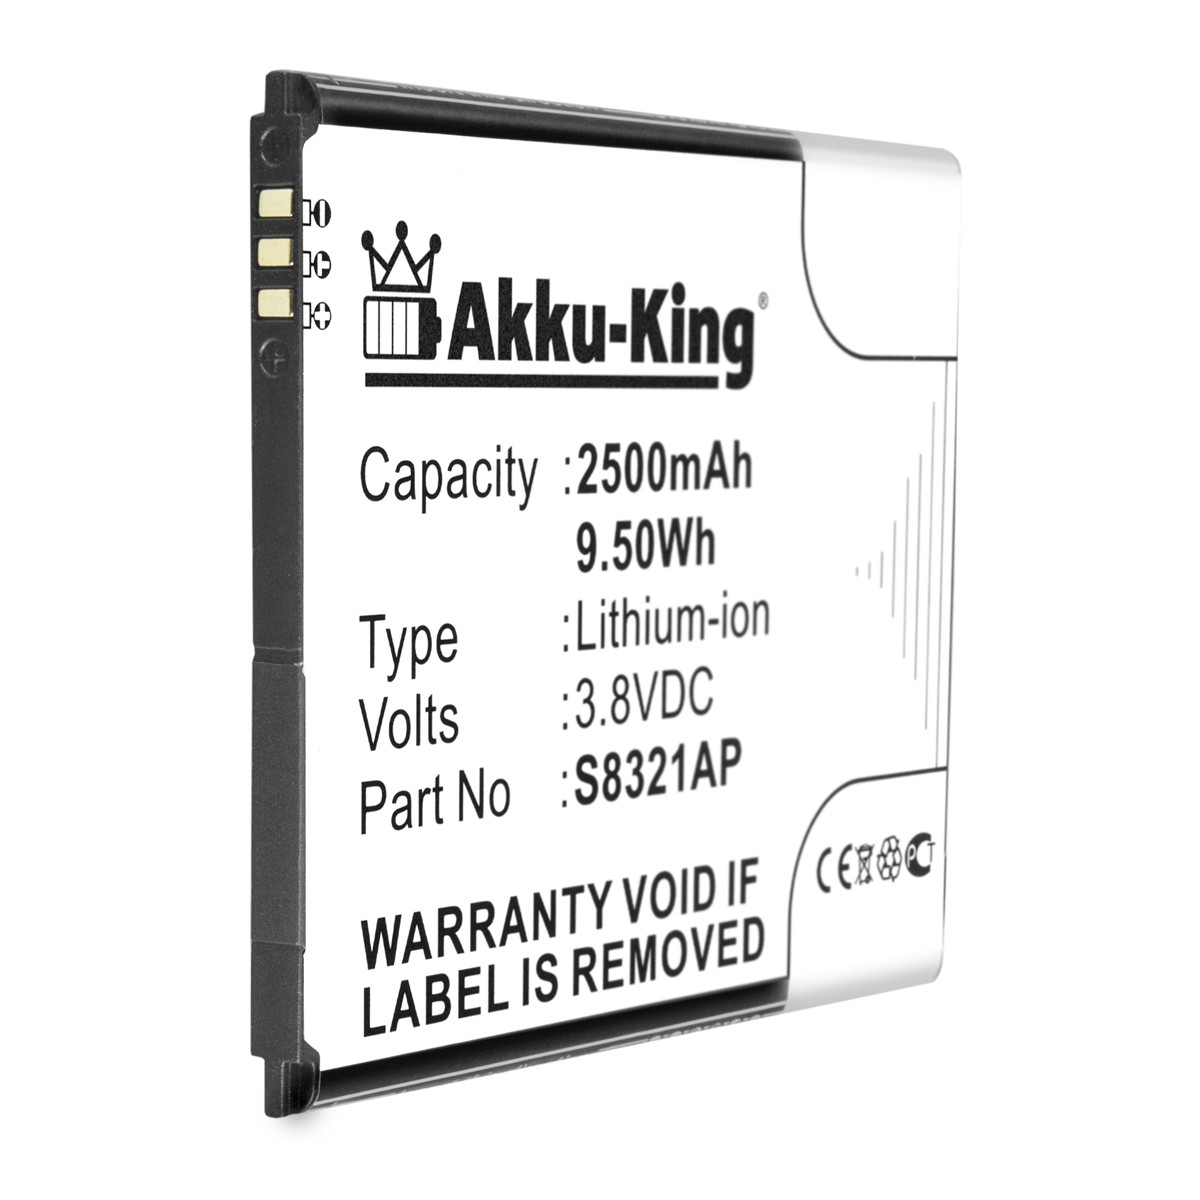 Handy-Akku, 2500mAh S8321AP 3.8 Li-Ion mit AKKU-KING kompatibel Akku Volt, Wiko